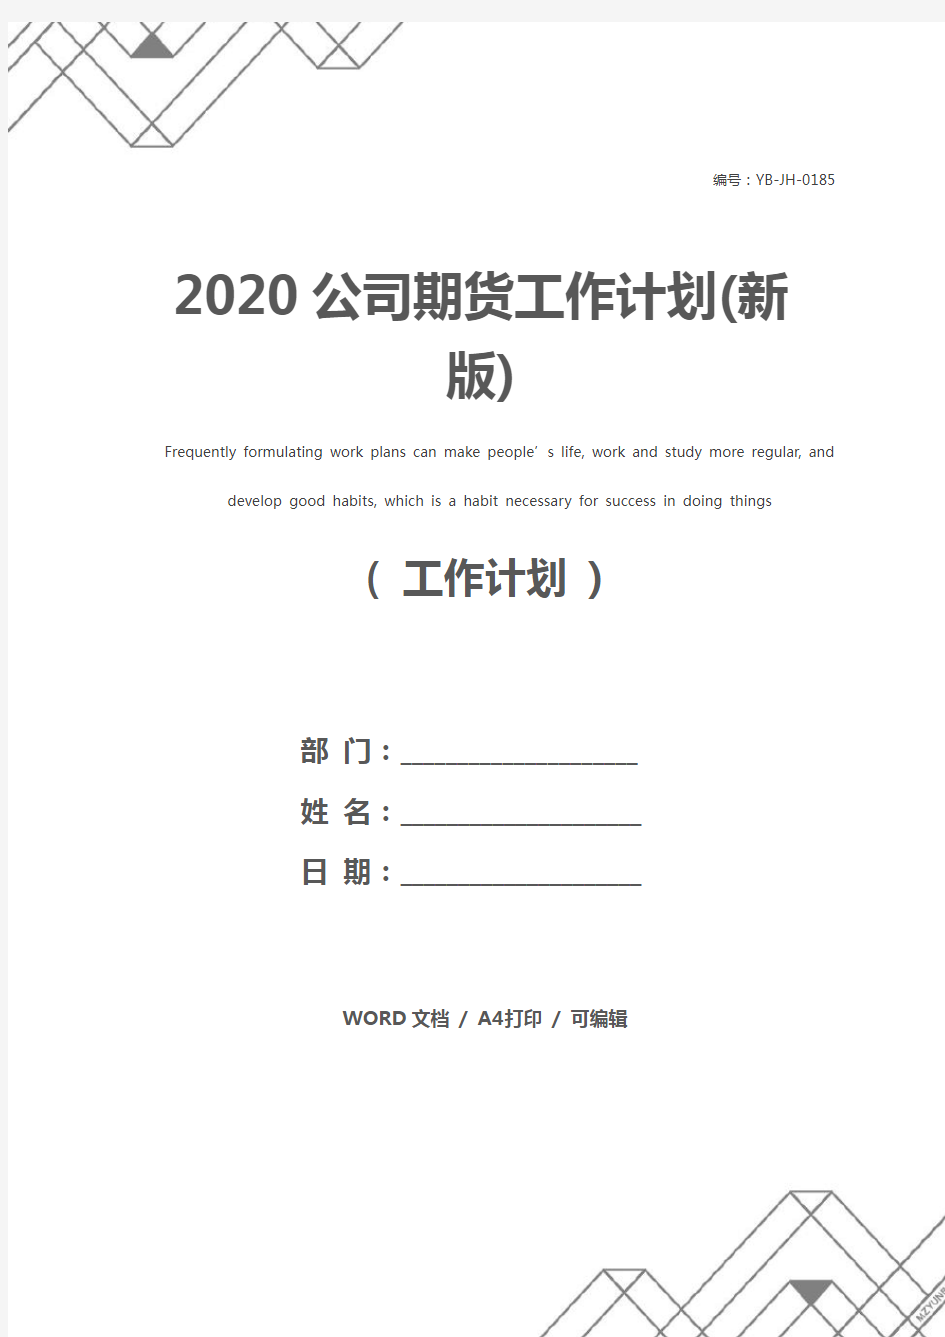 2020公司期货工作计划(新版)